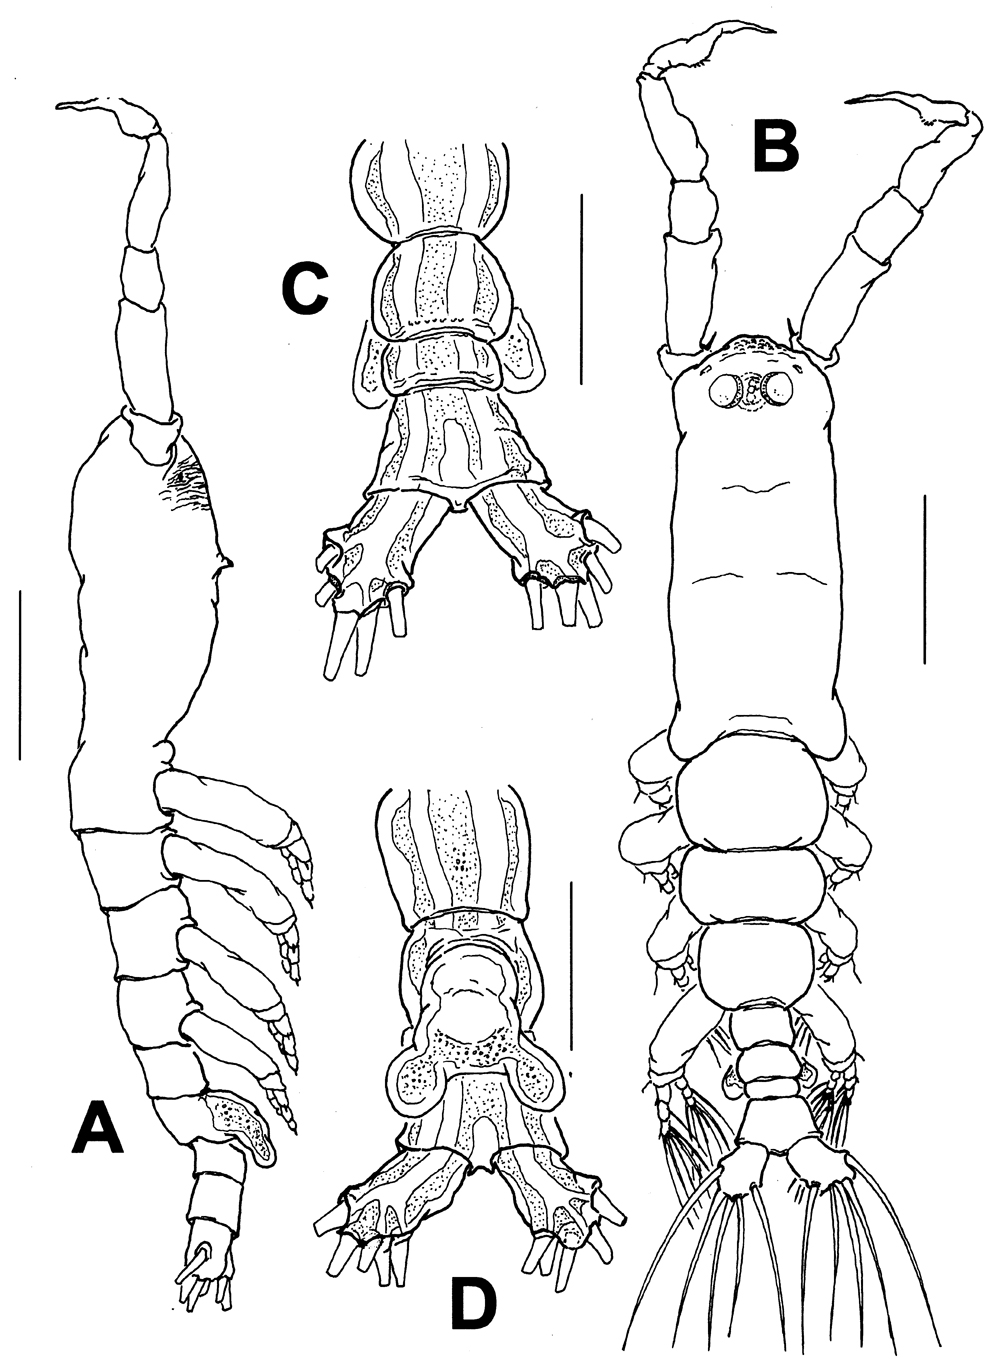 Espèce Monstrillopsis nanus - Planche 1 de figures morphologiques